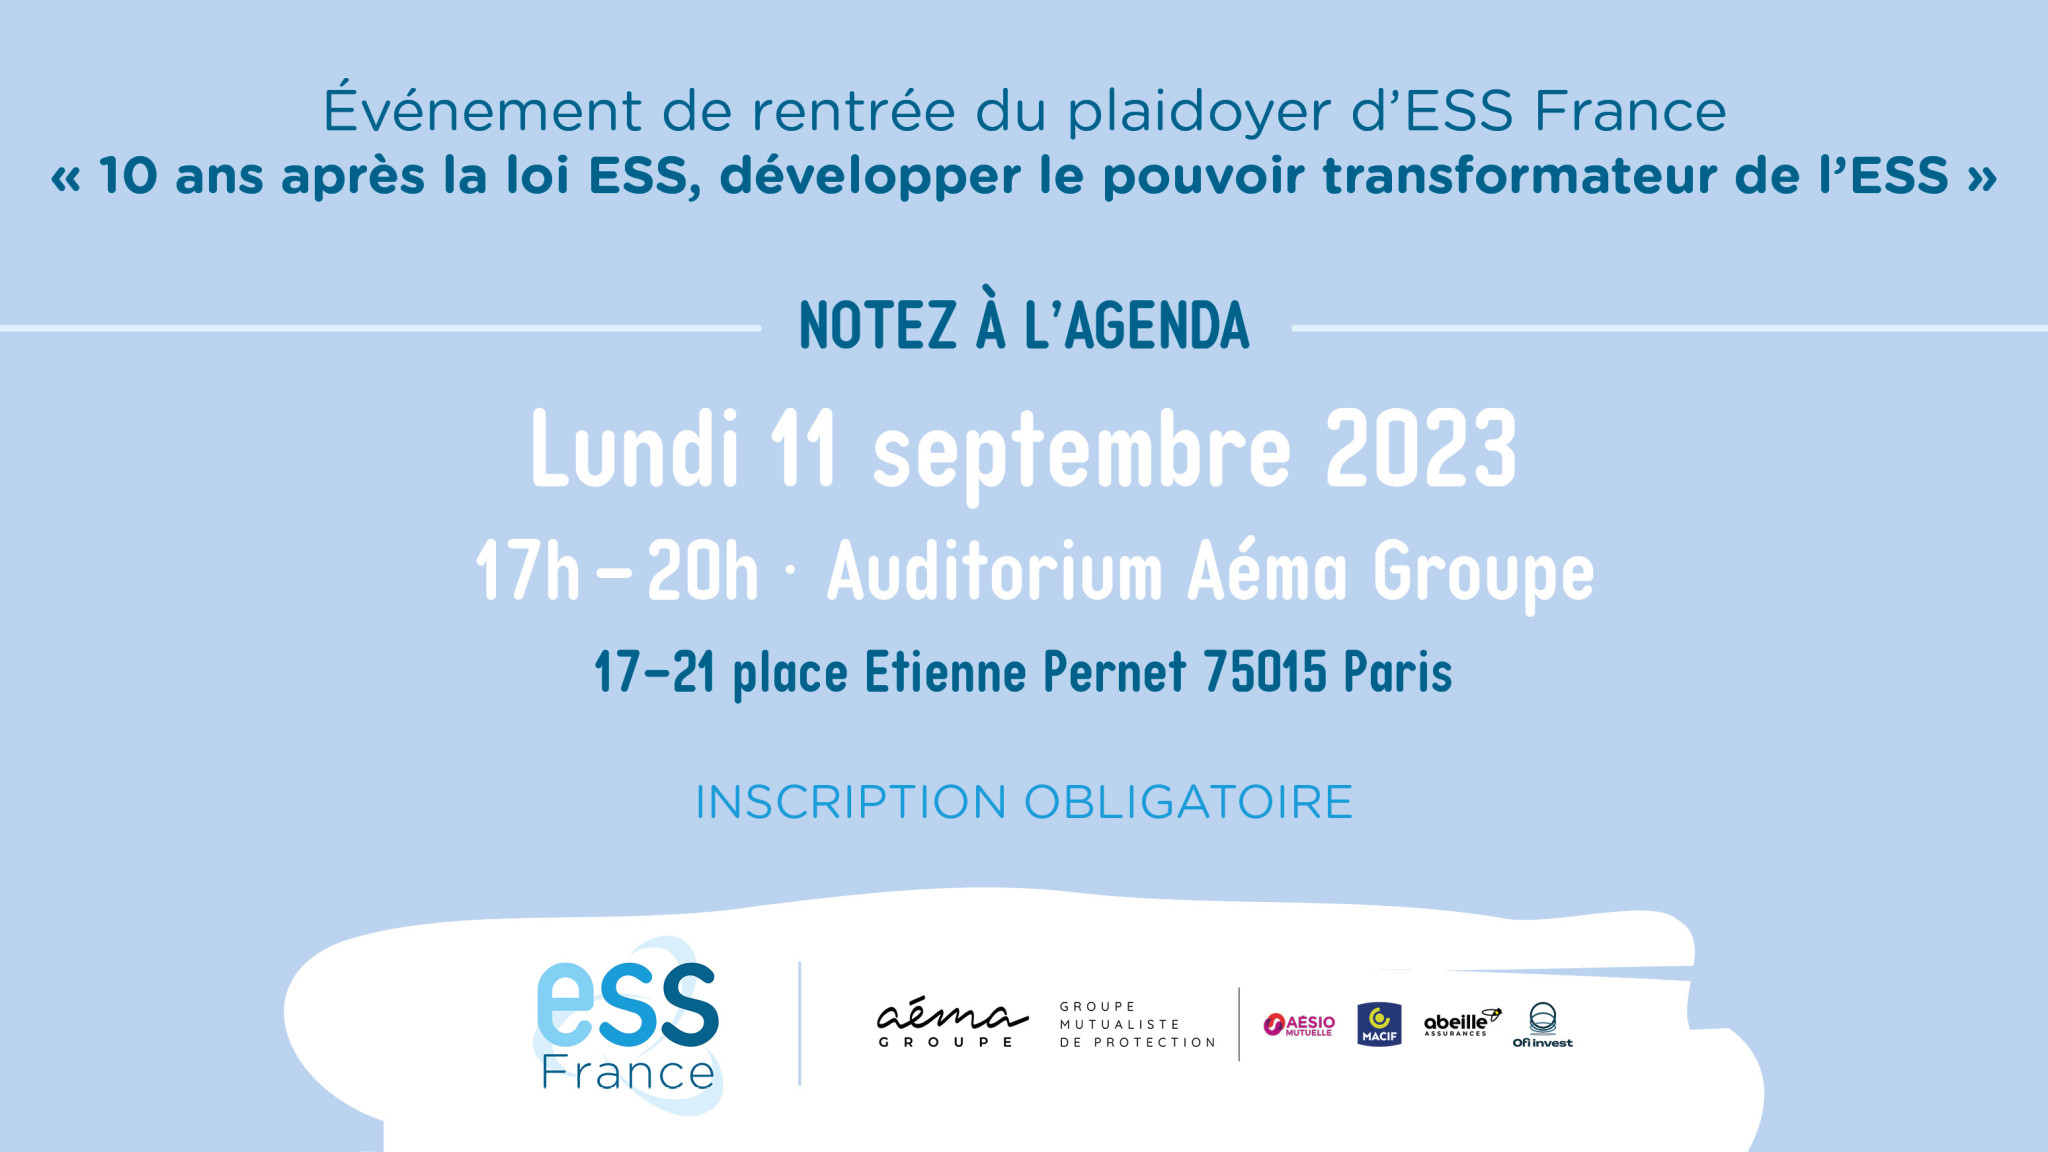 Evénement de rentrée du plaidoyer d'ESS France le 11 septembre 2023 "10 ans après la loi ESS, développer le pouvoir transformateur de l'ESS"